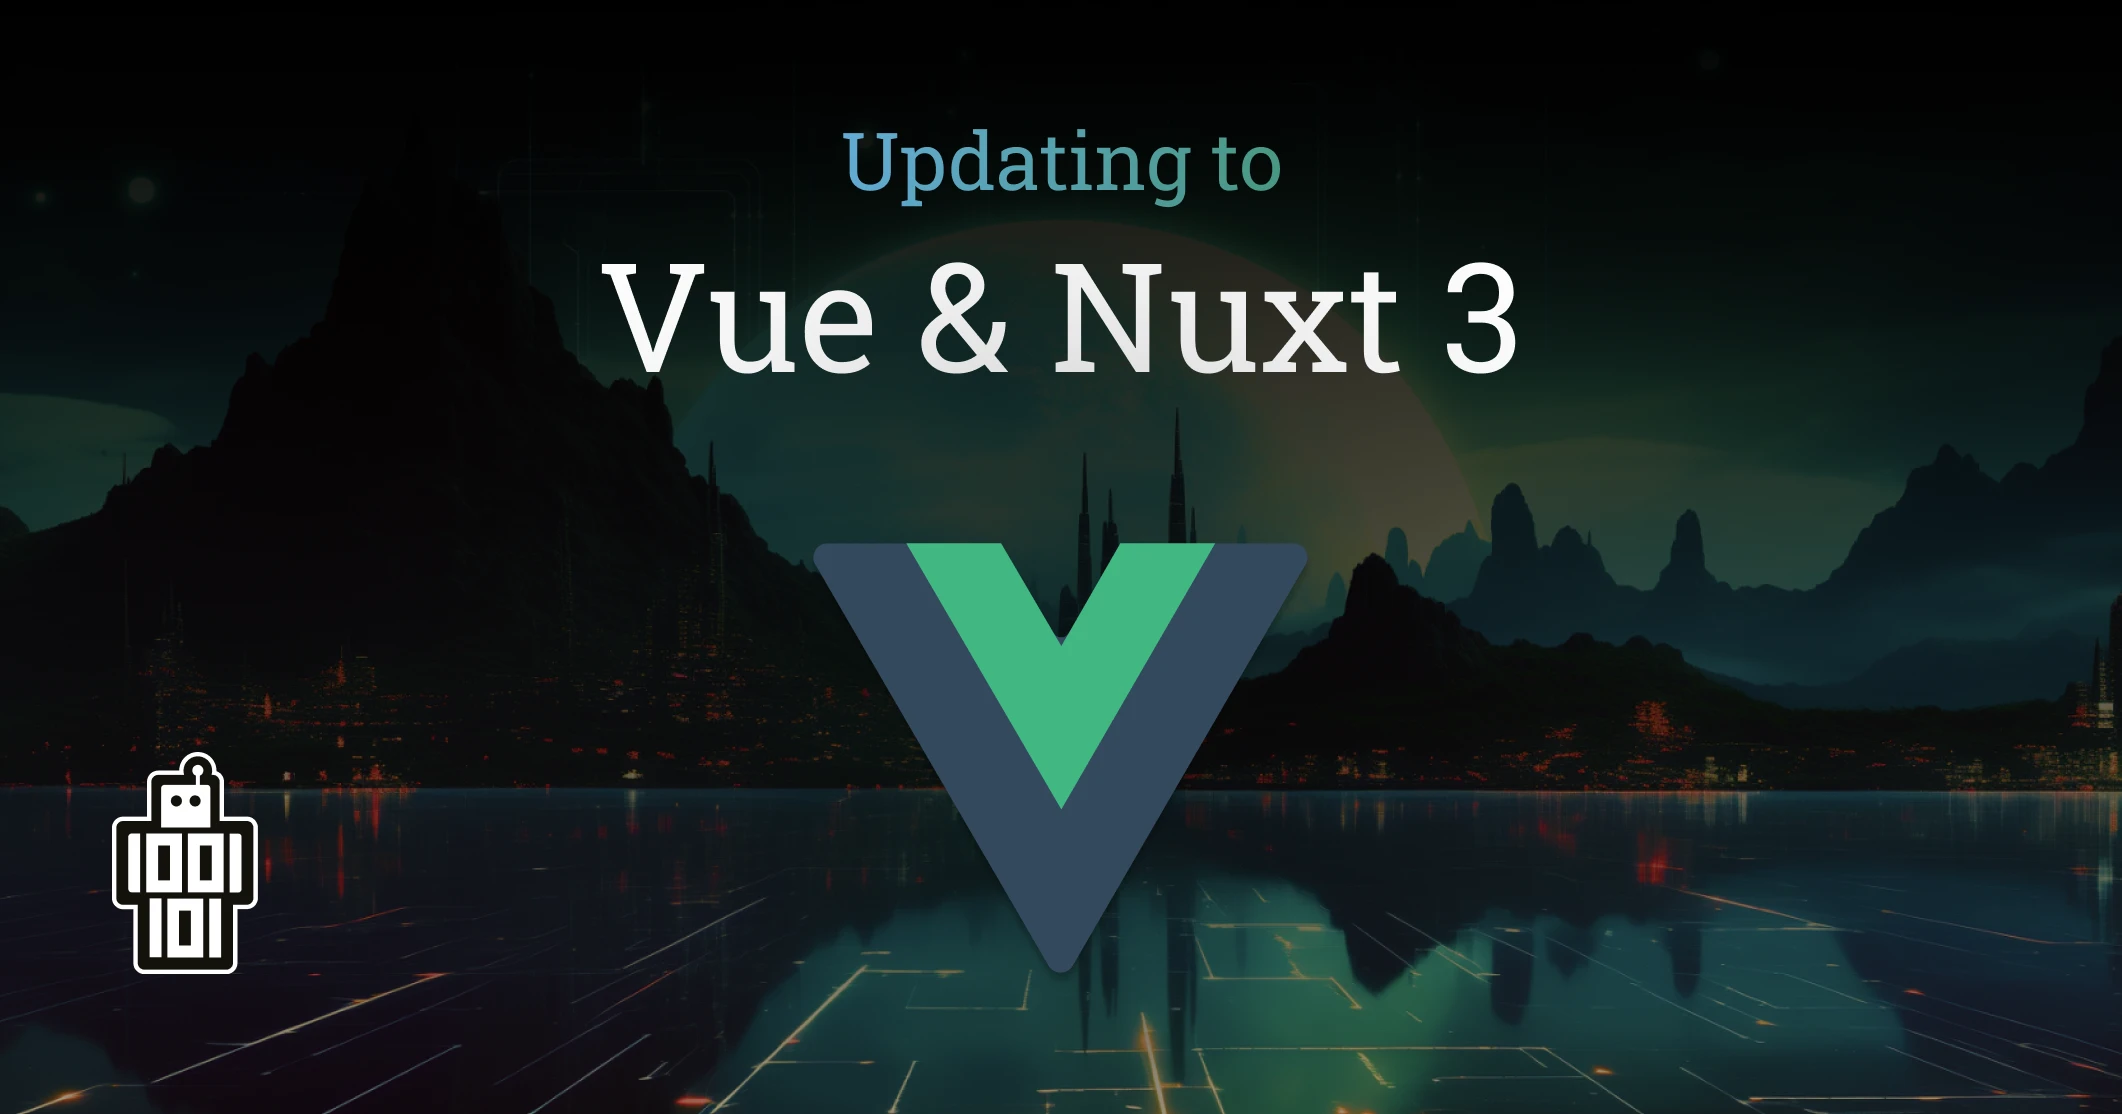 De voordelen van Vue en Nuxt 3 - Het implementeren van de nieuwste snufjes doen we met Vue en Nuxt 3